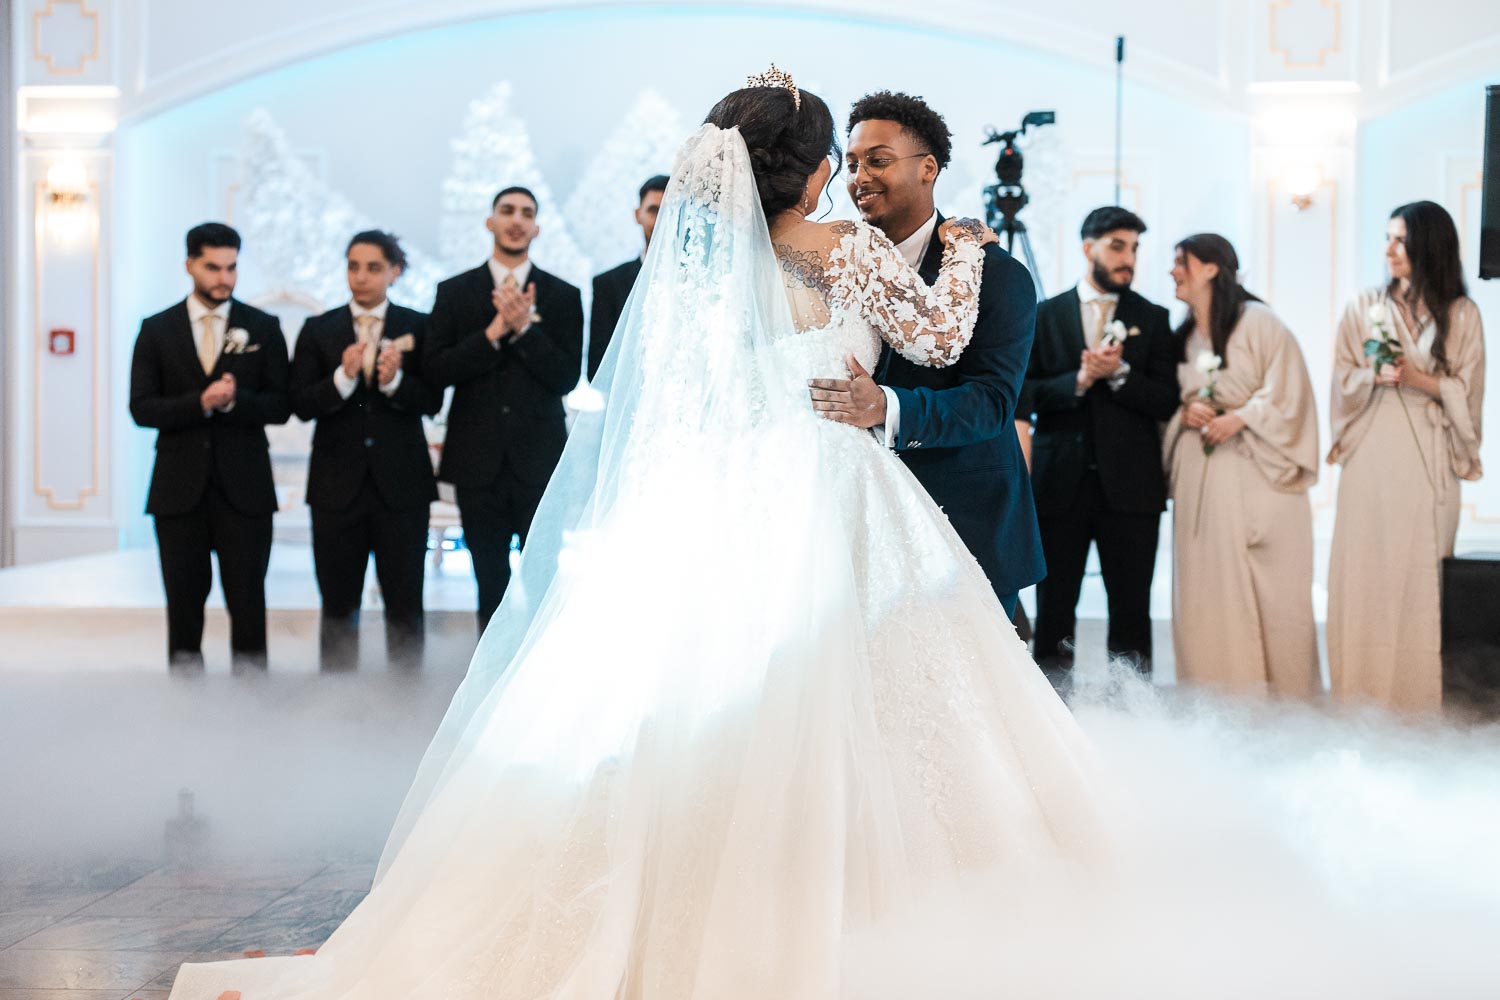 Brautpaar tanzend in Umarmung, umgeben von Nebel und Feuerwerk, mit Best Men und Bridesmaids im Hintergrund.